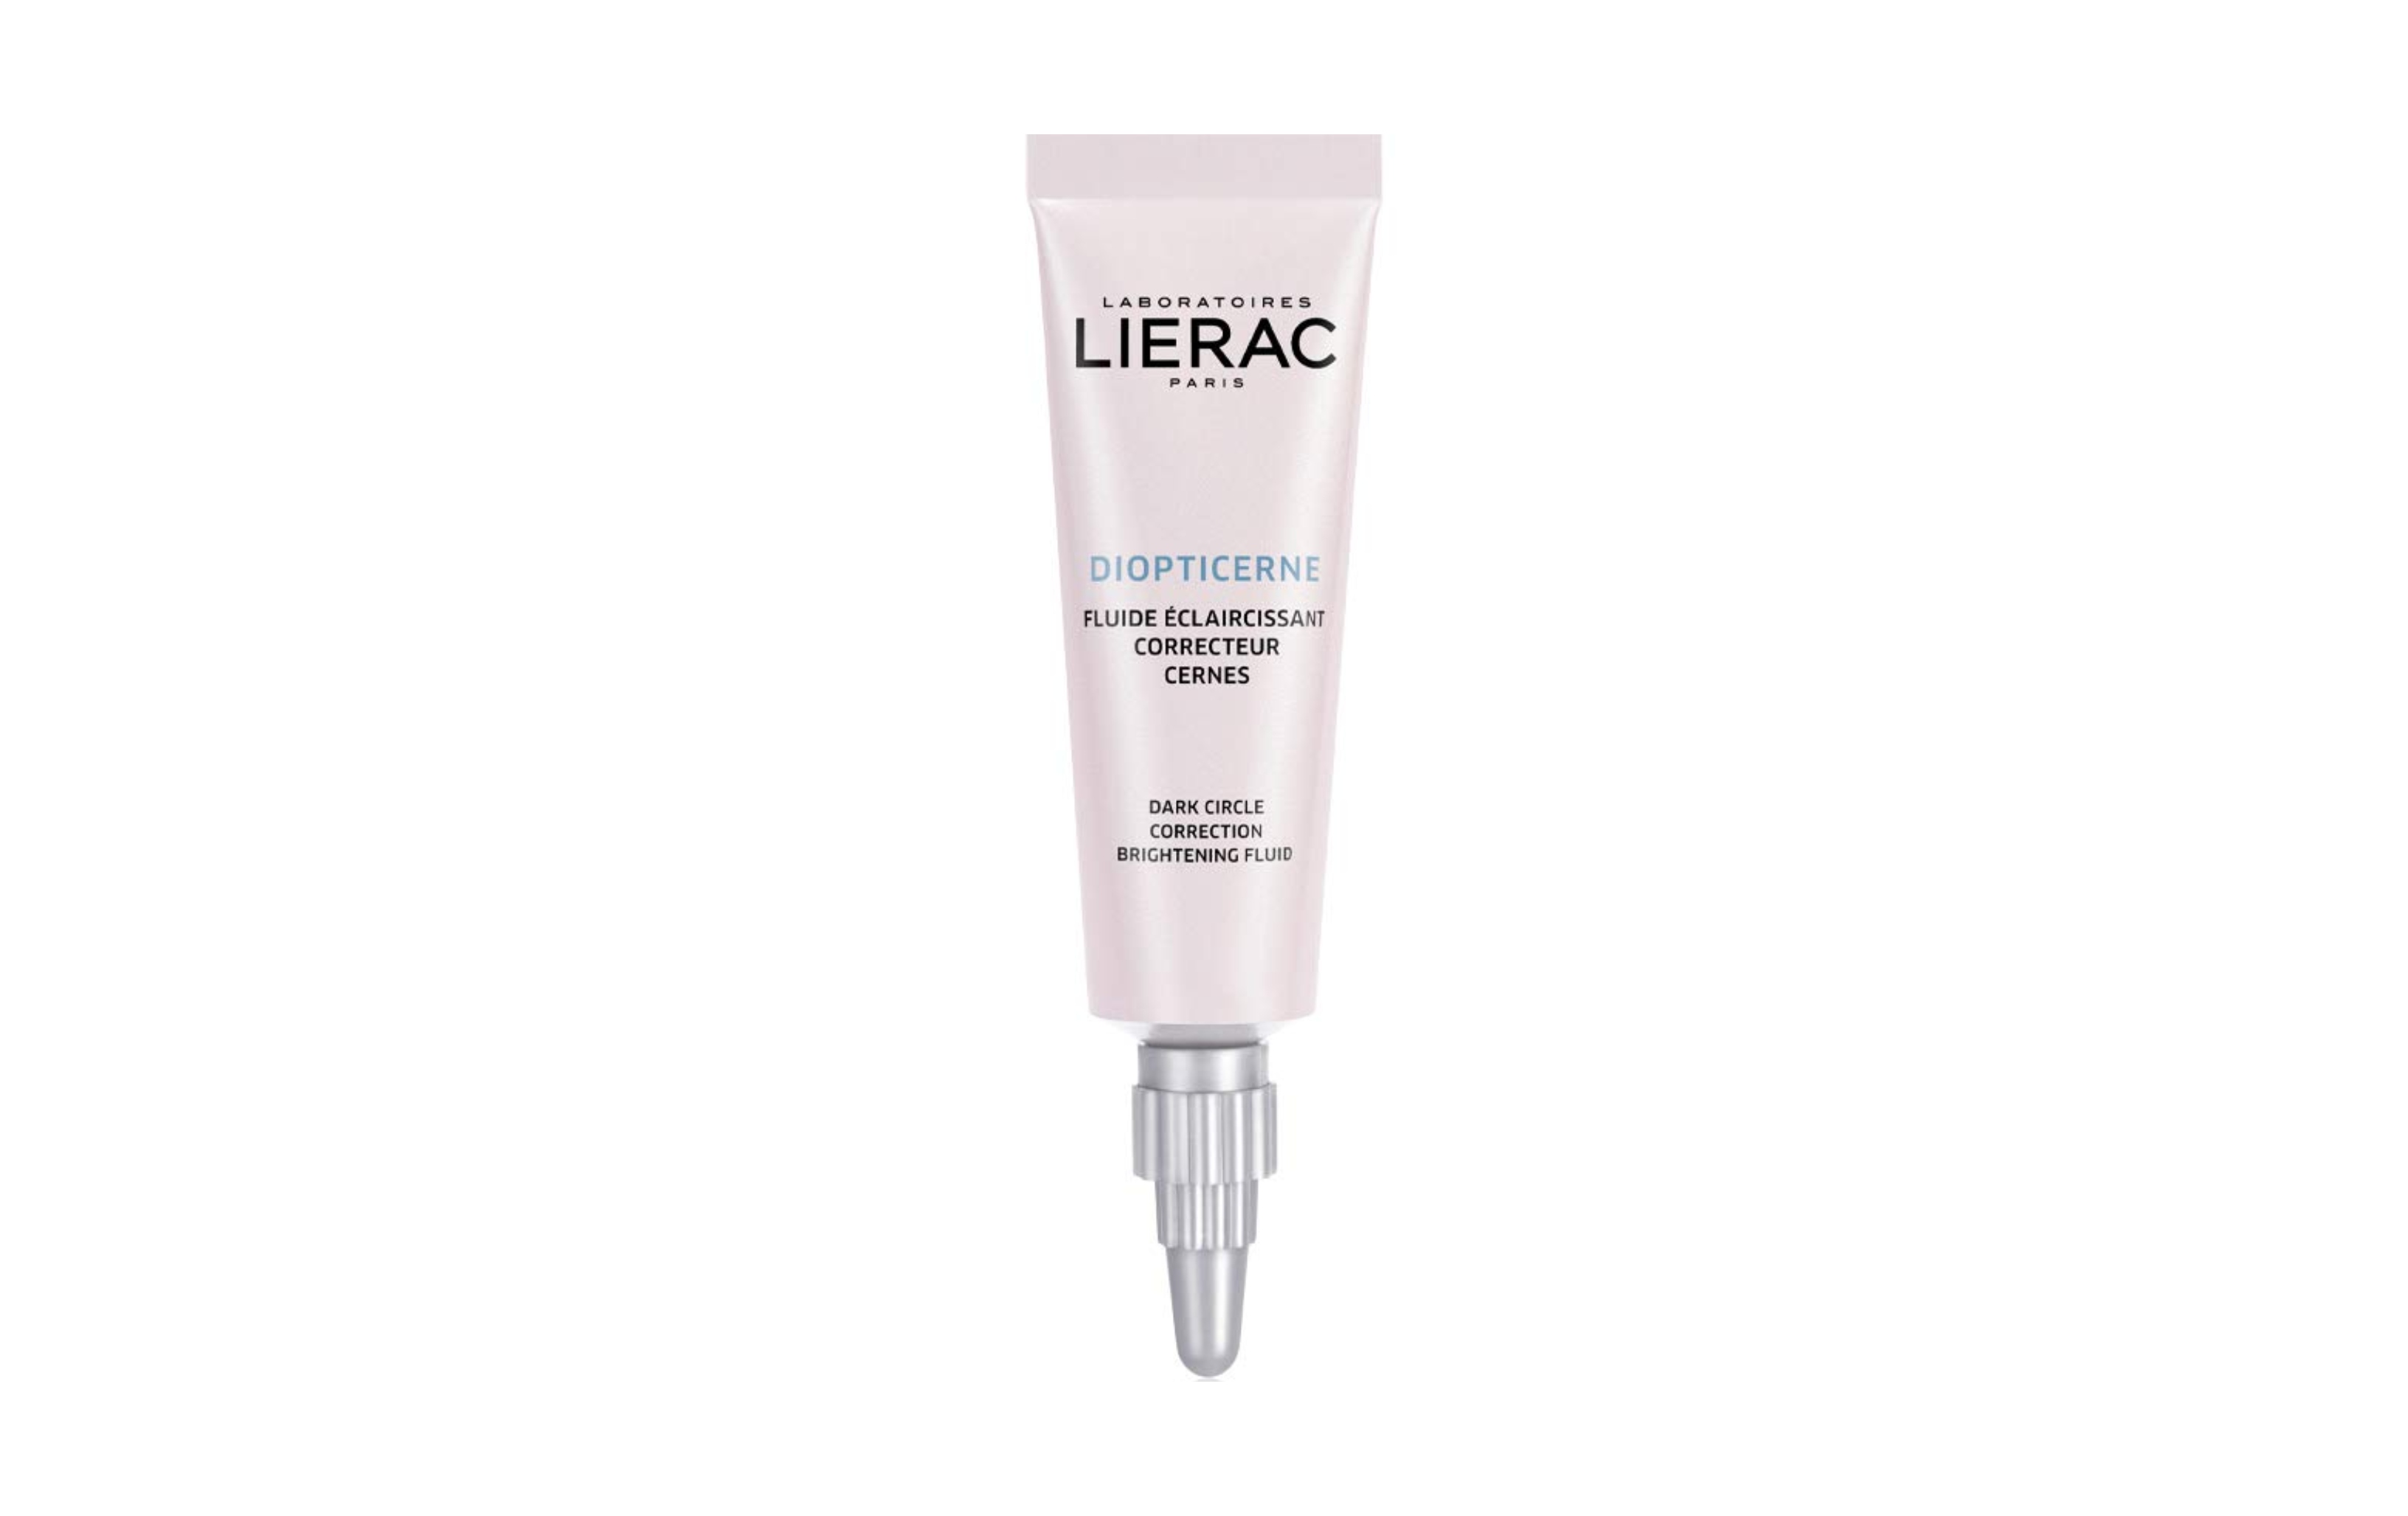 Lierac 'Diopticerne' eye cream